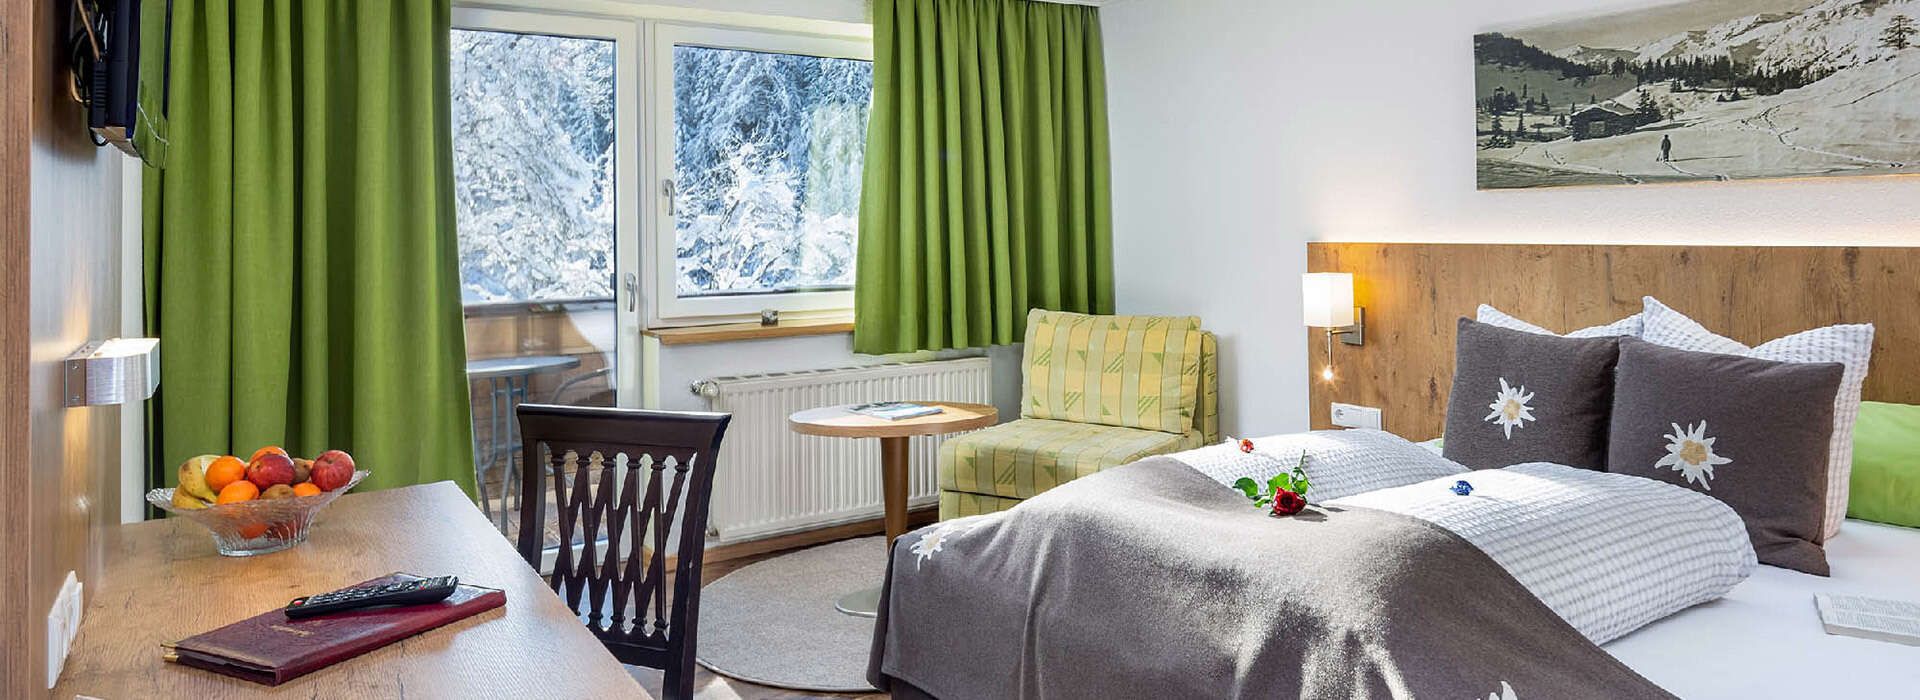 Dreibettzimmer im Hotel Schlossberg